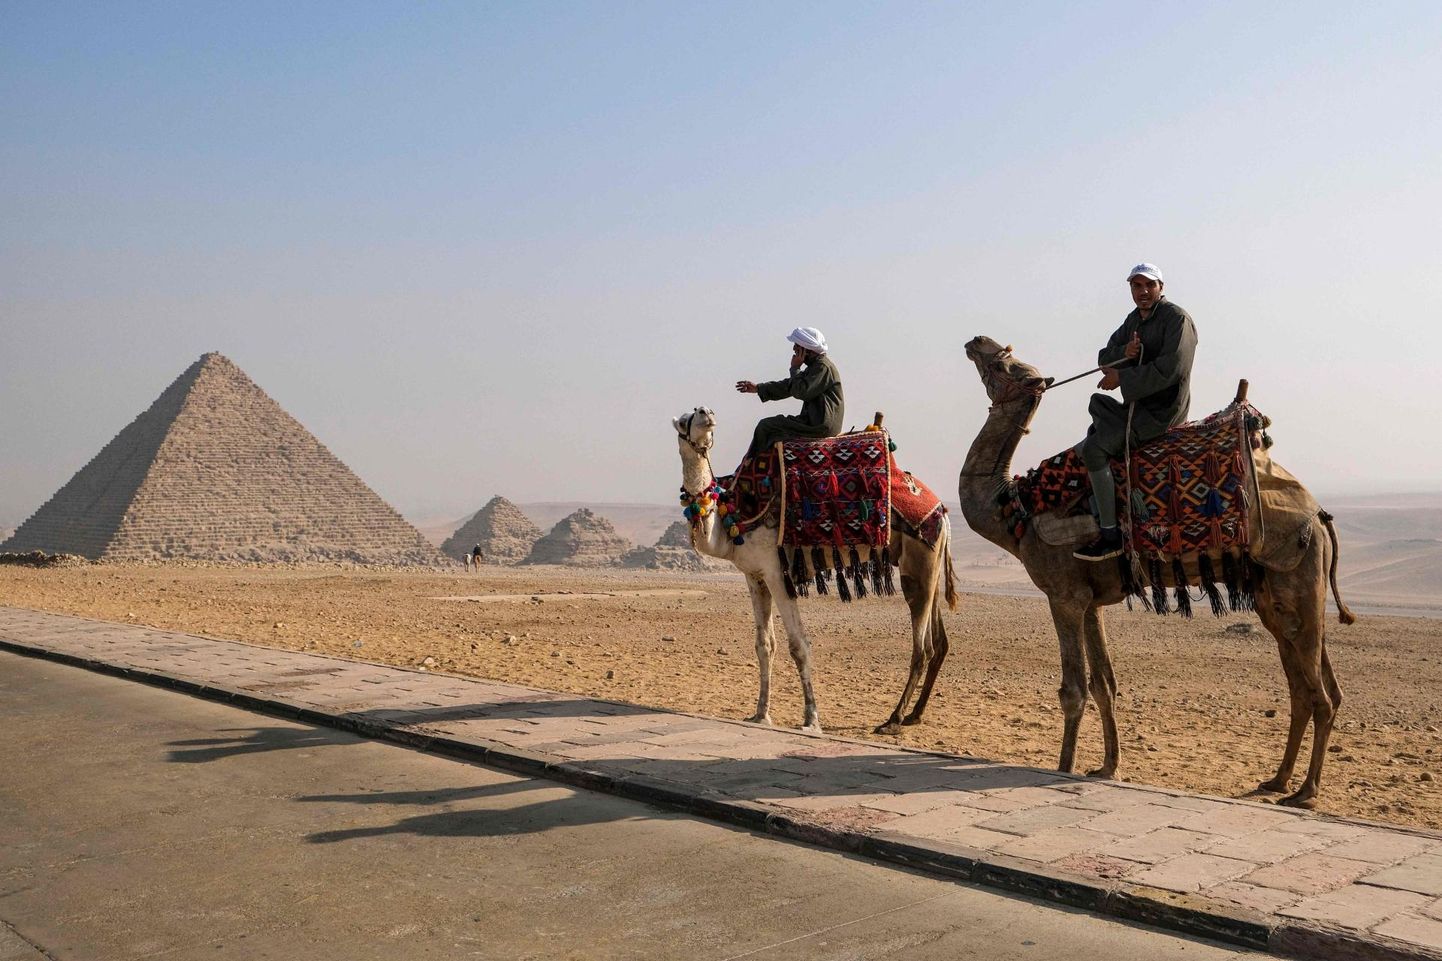 Egiptuses väikelapsega reisimine pole sama ohutu kui Euroopas, kummatigi paelub Egiptus viisaka teenindusega. Kaamelisõidud on osa reisi võlust.